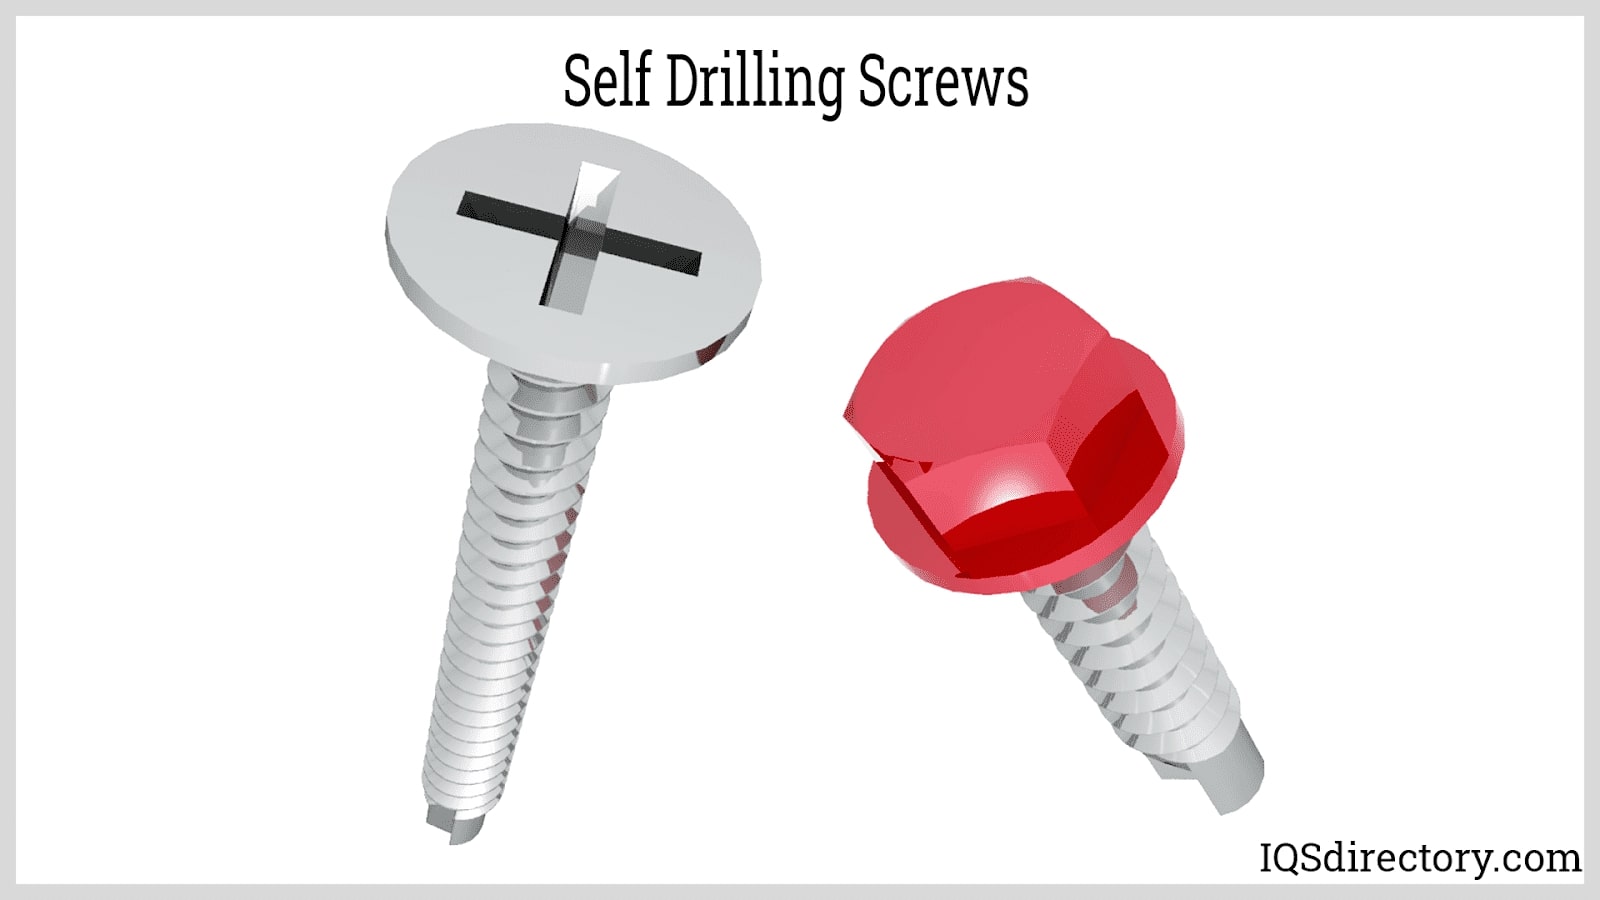 Self Drilling Screws